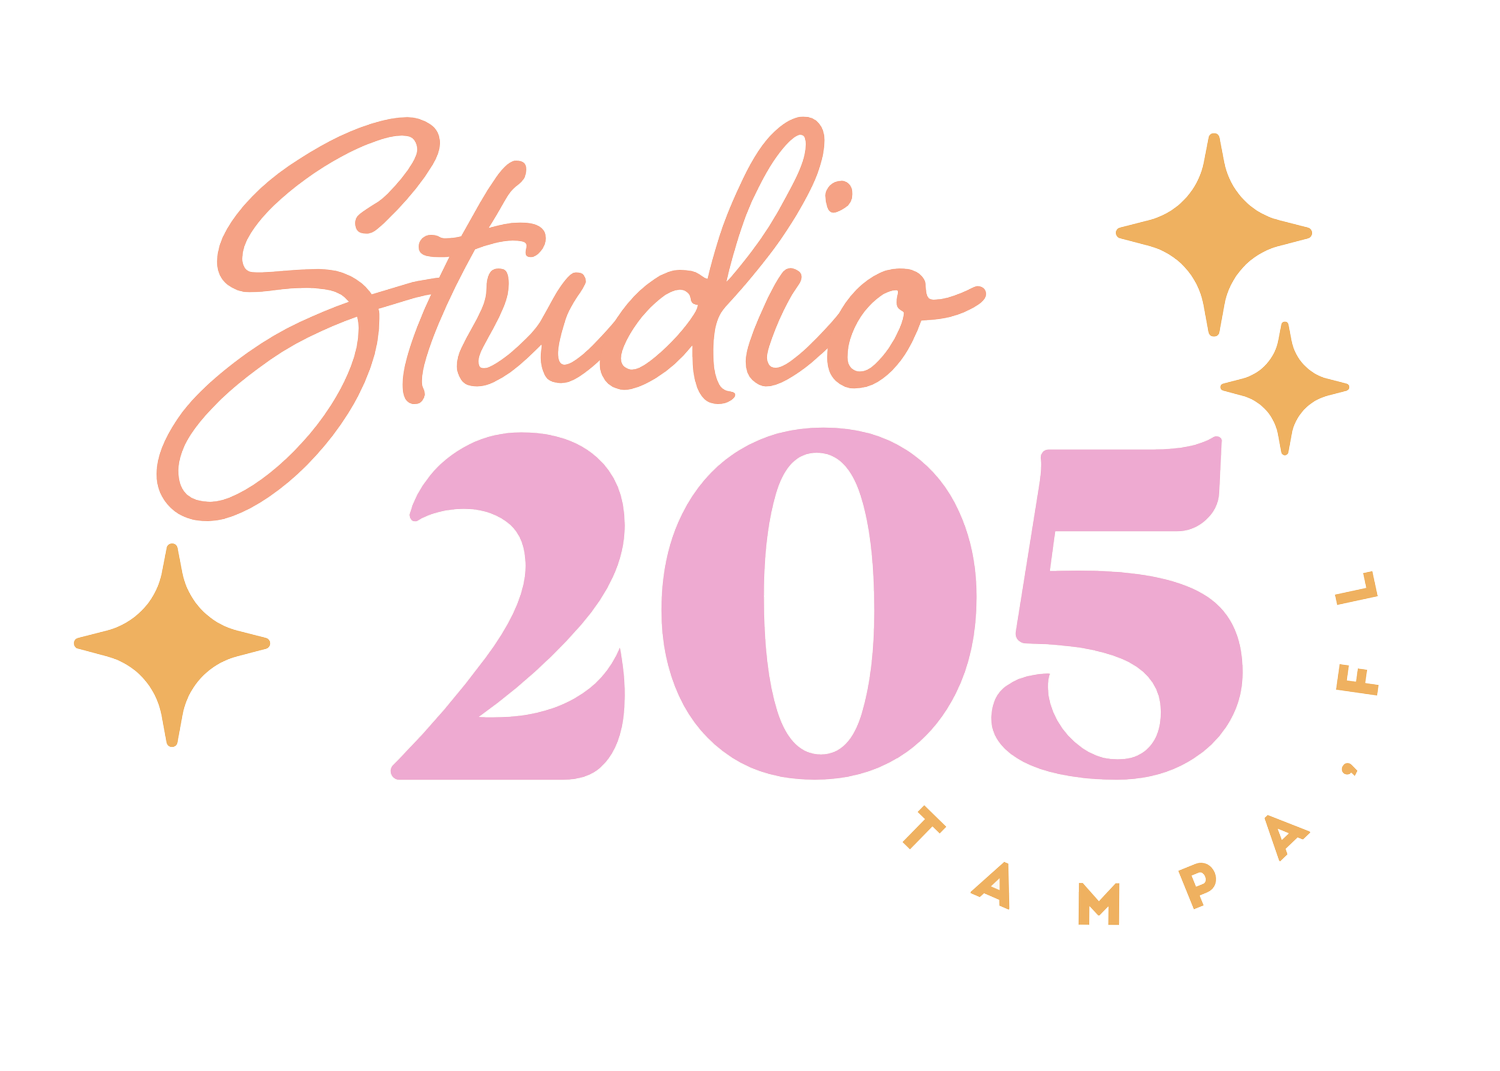 Studio 205